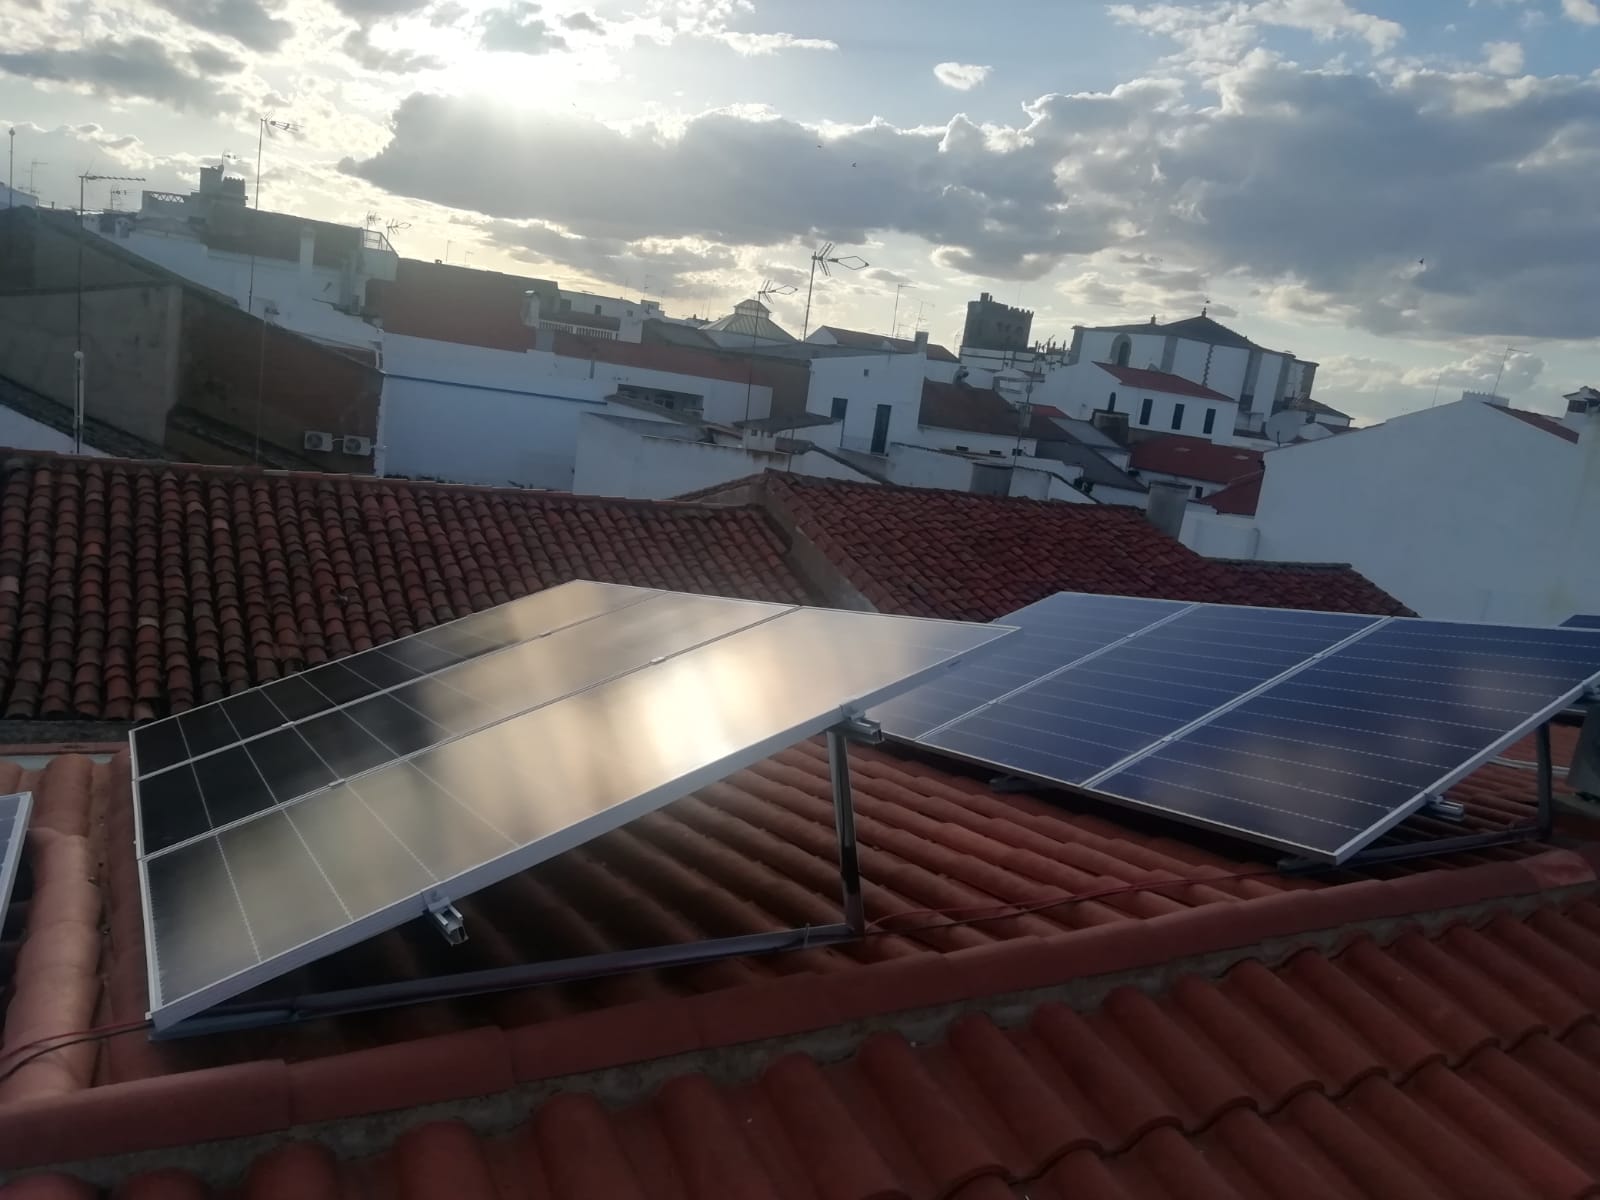 Instalación Fotovoltaica de Autoconsumo en Fuente del Maestre